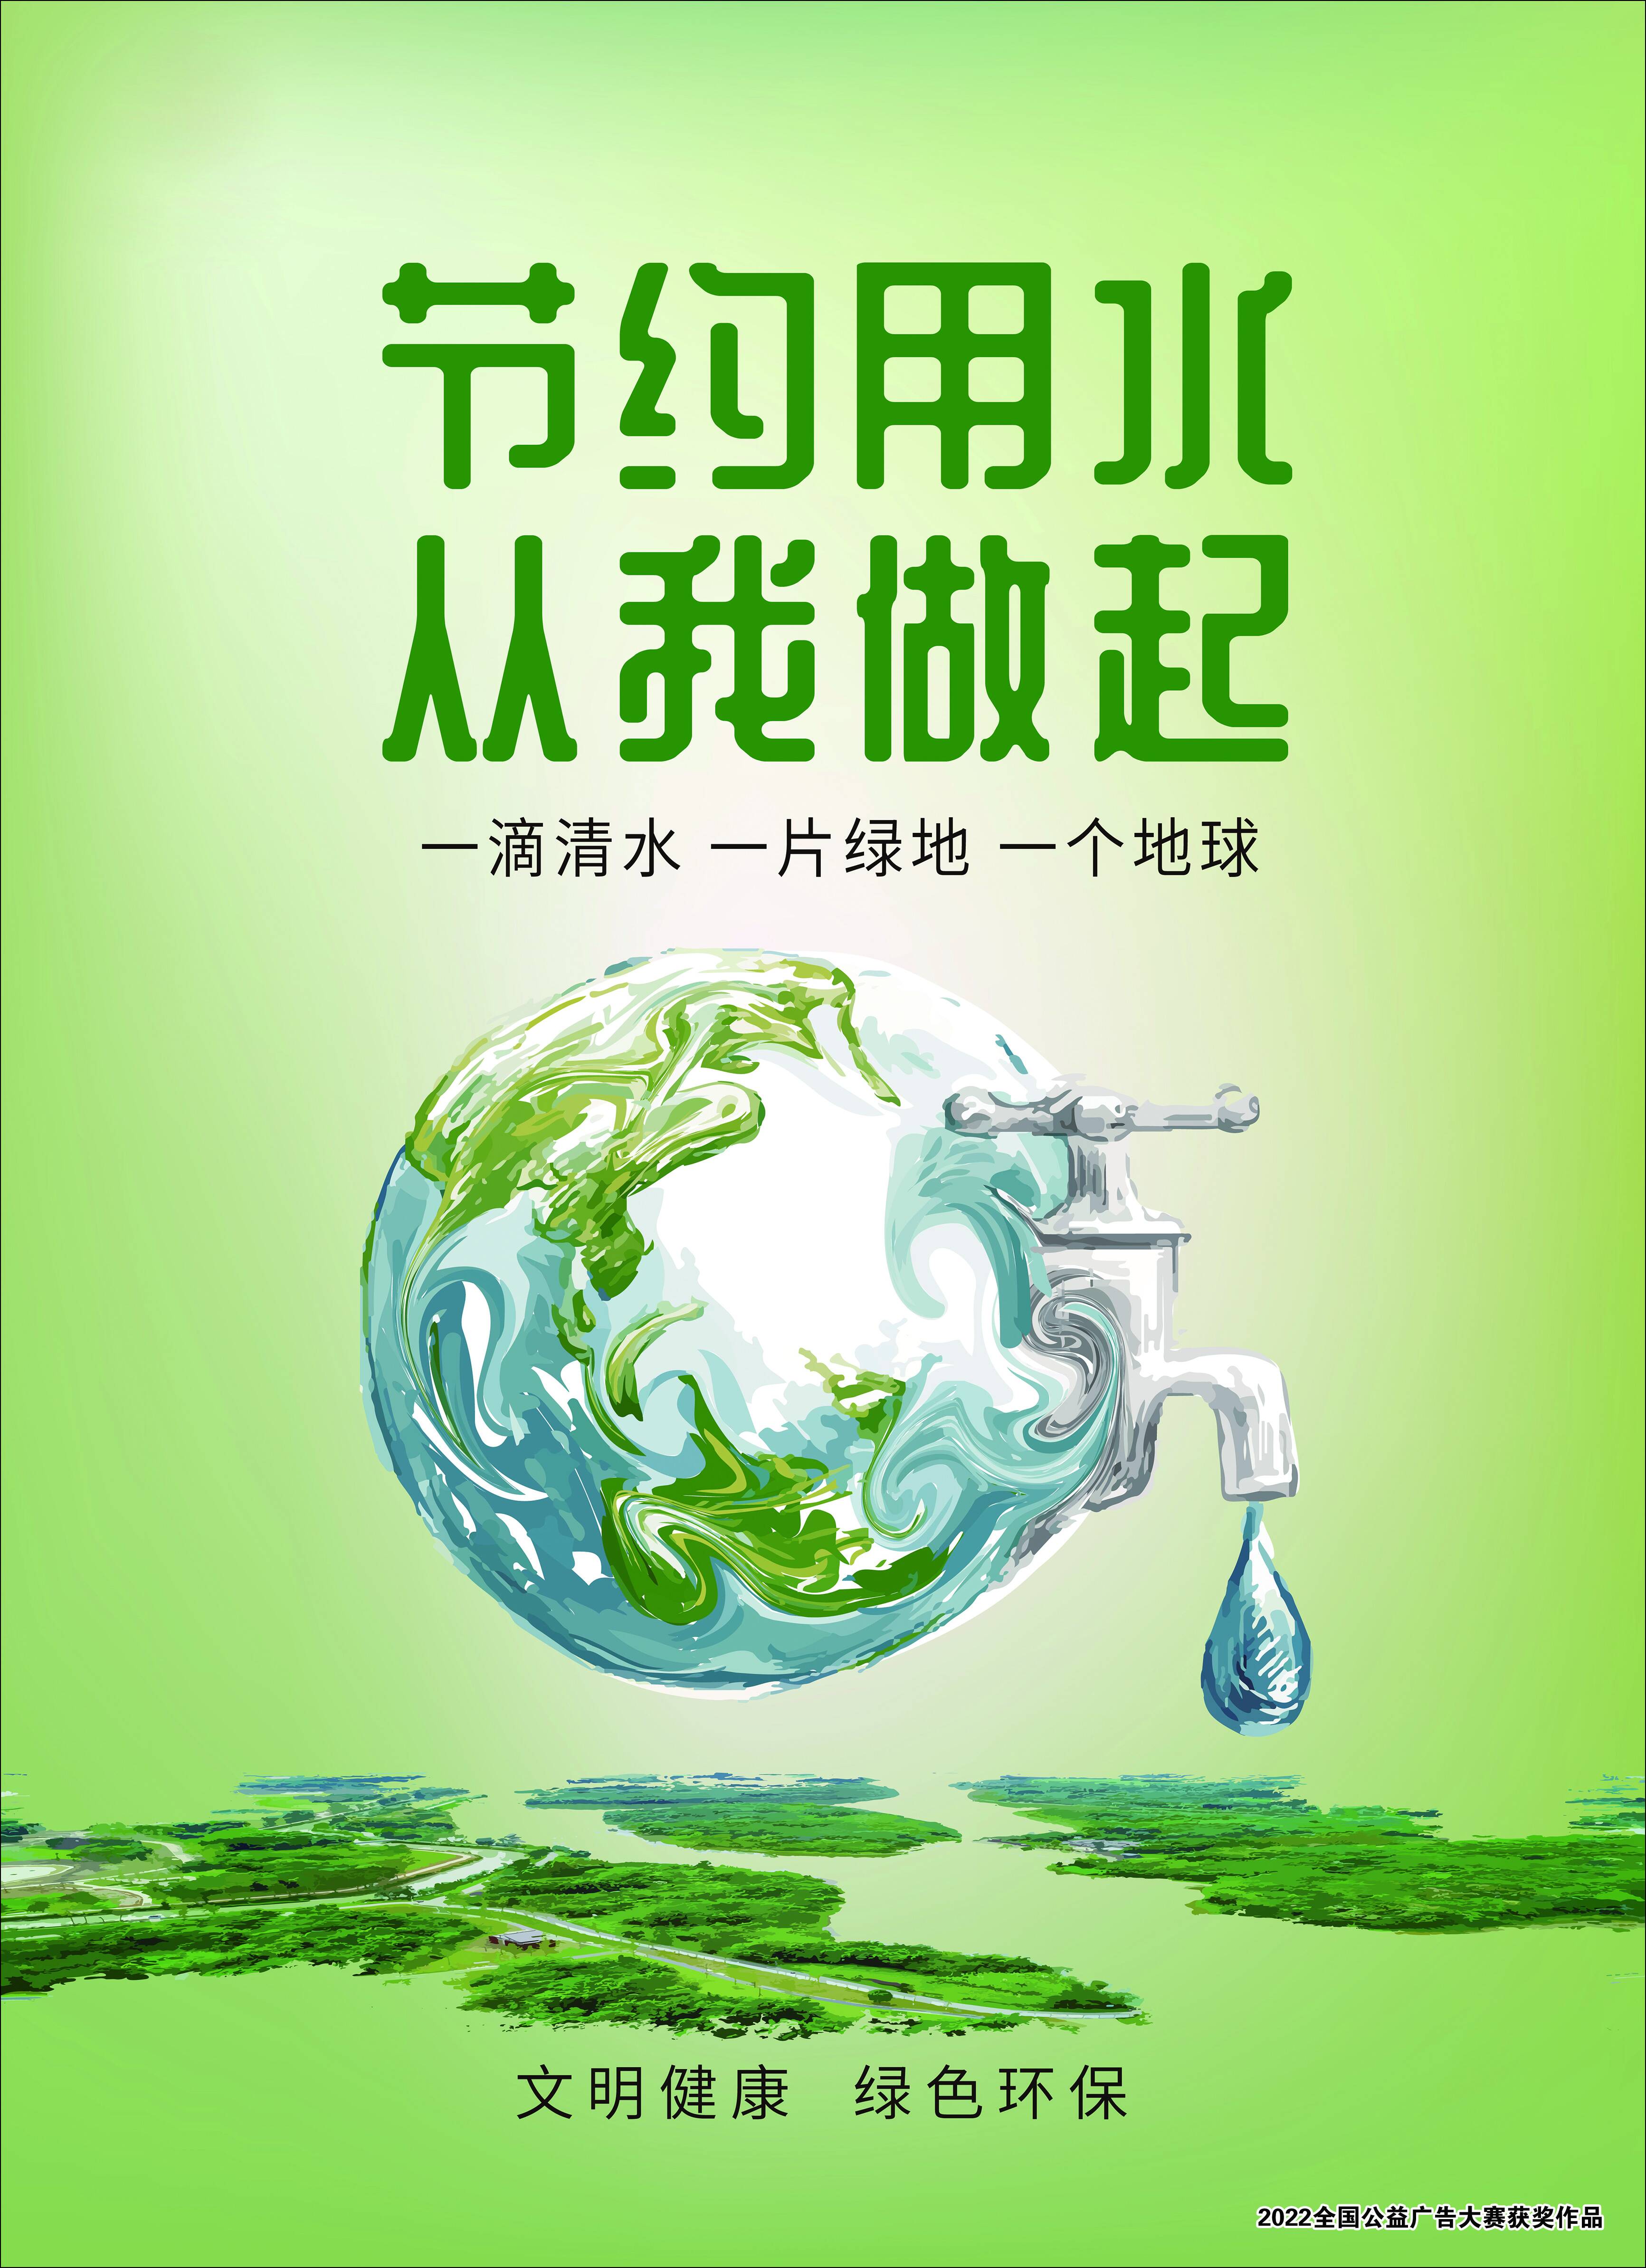 【公益广告】绿色低碳环保(图1)